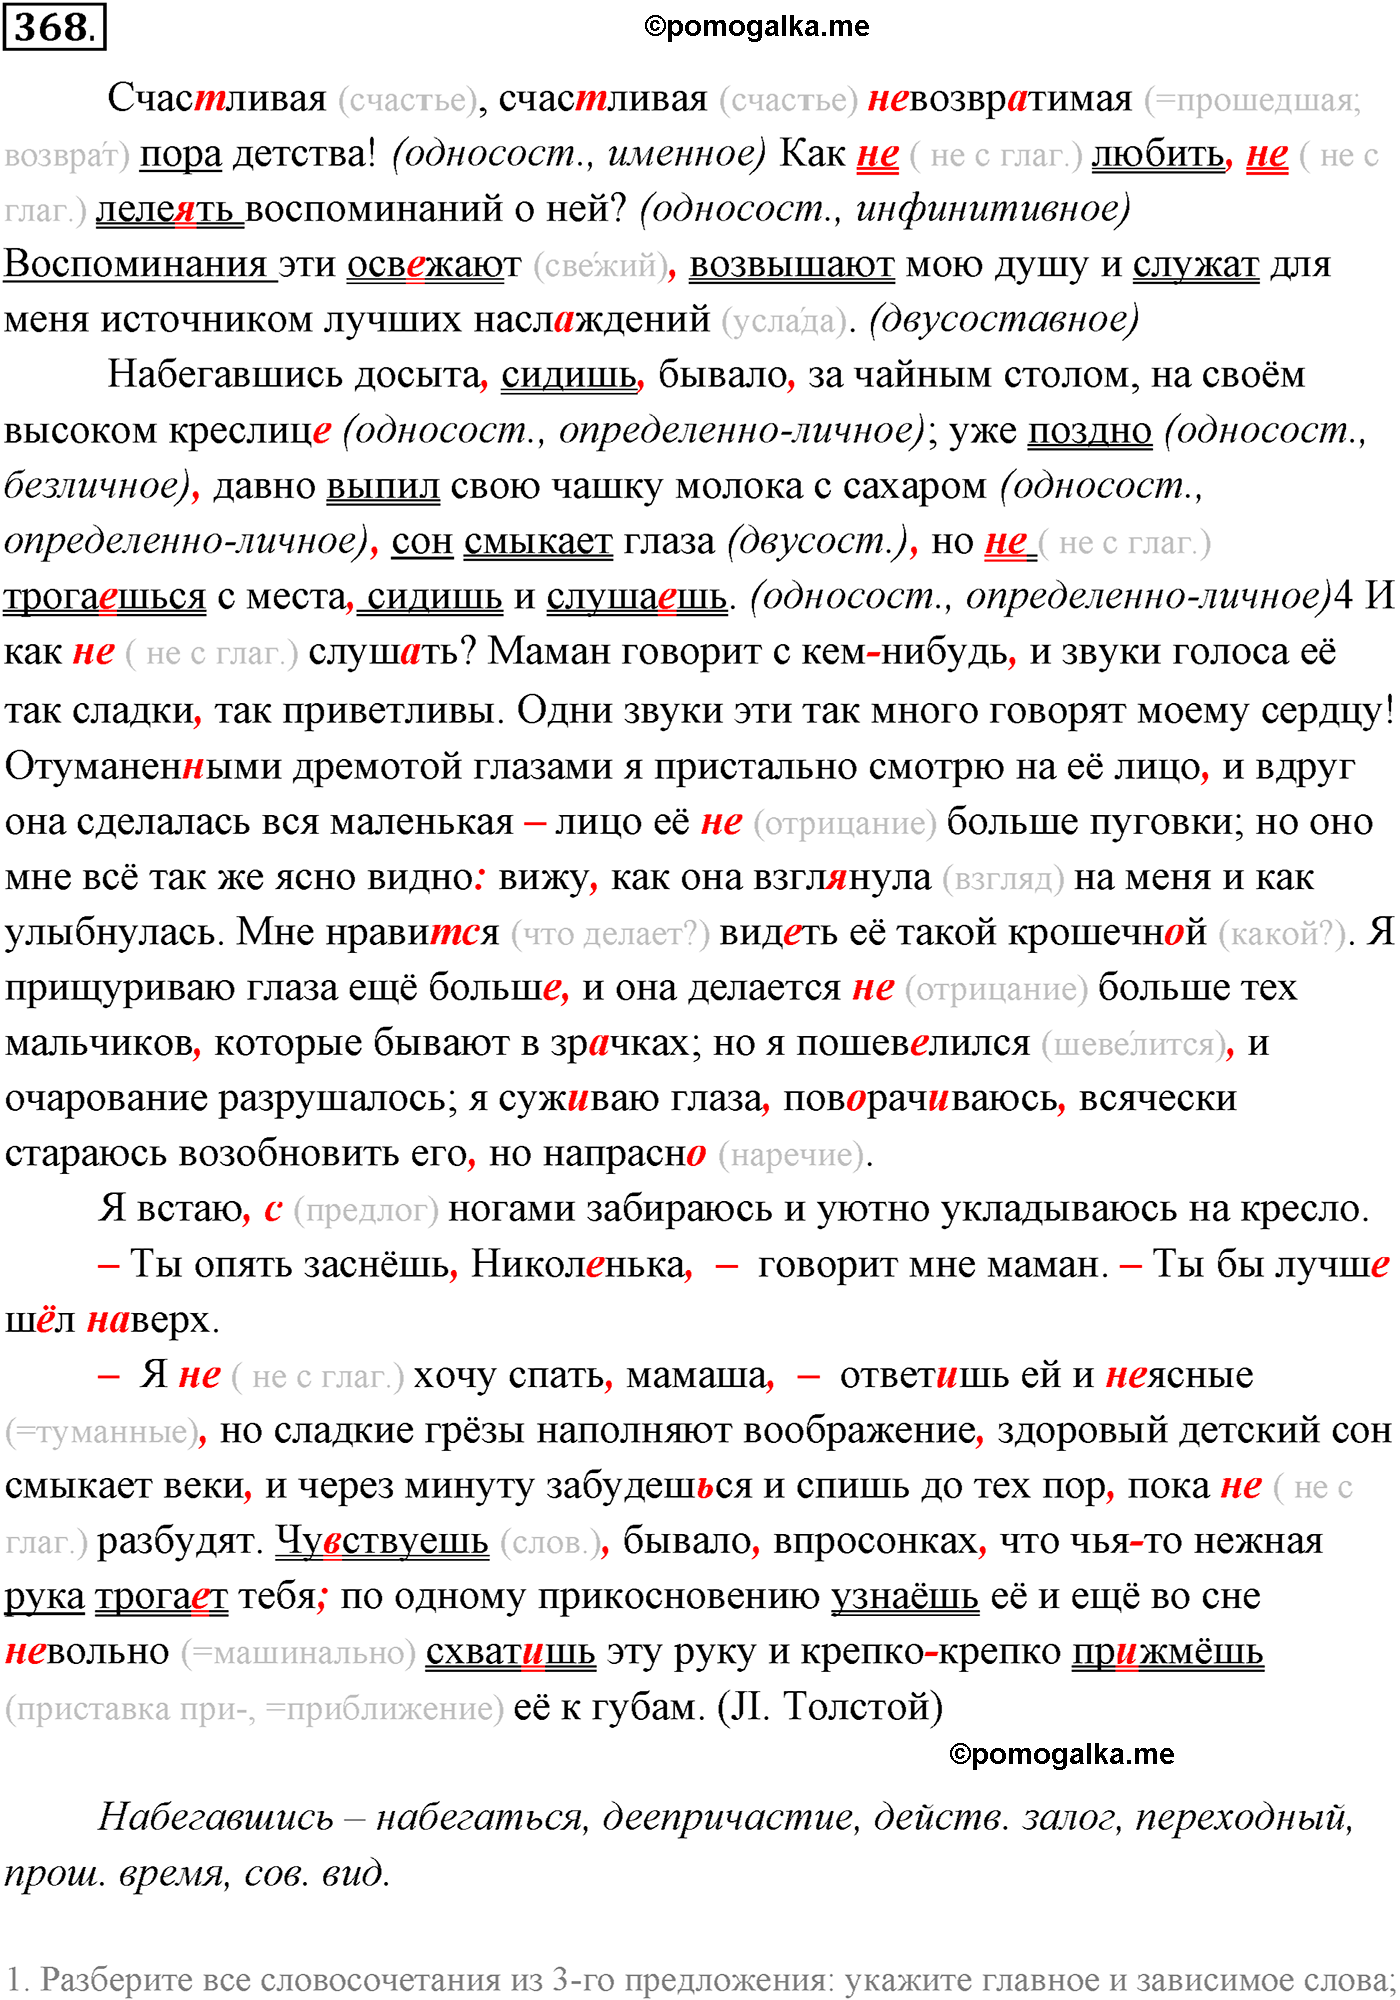 упражнение №368 русский язык 10-11 класс Власенков